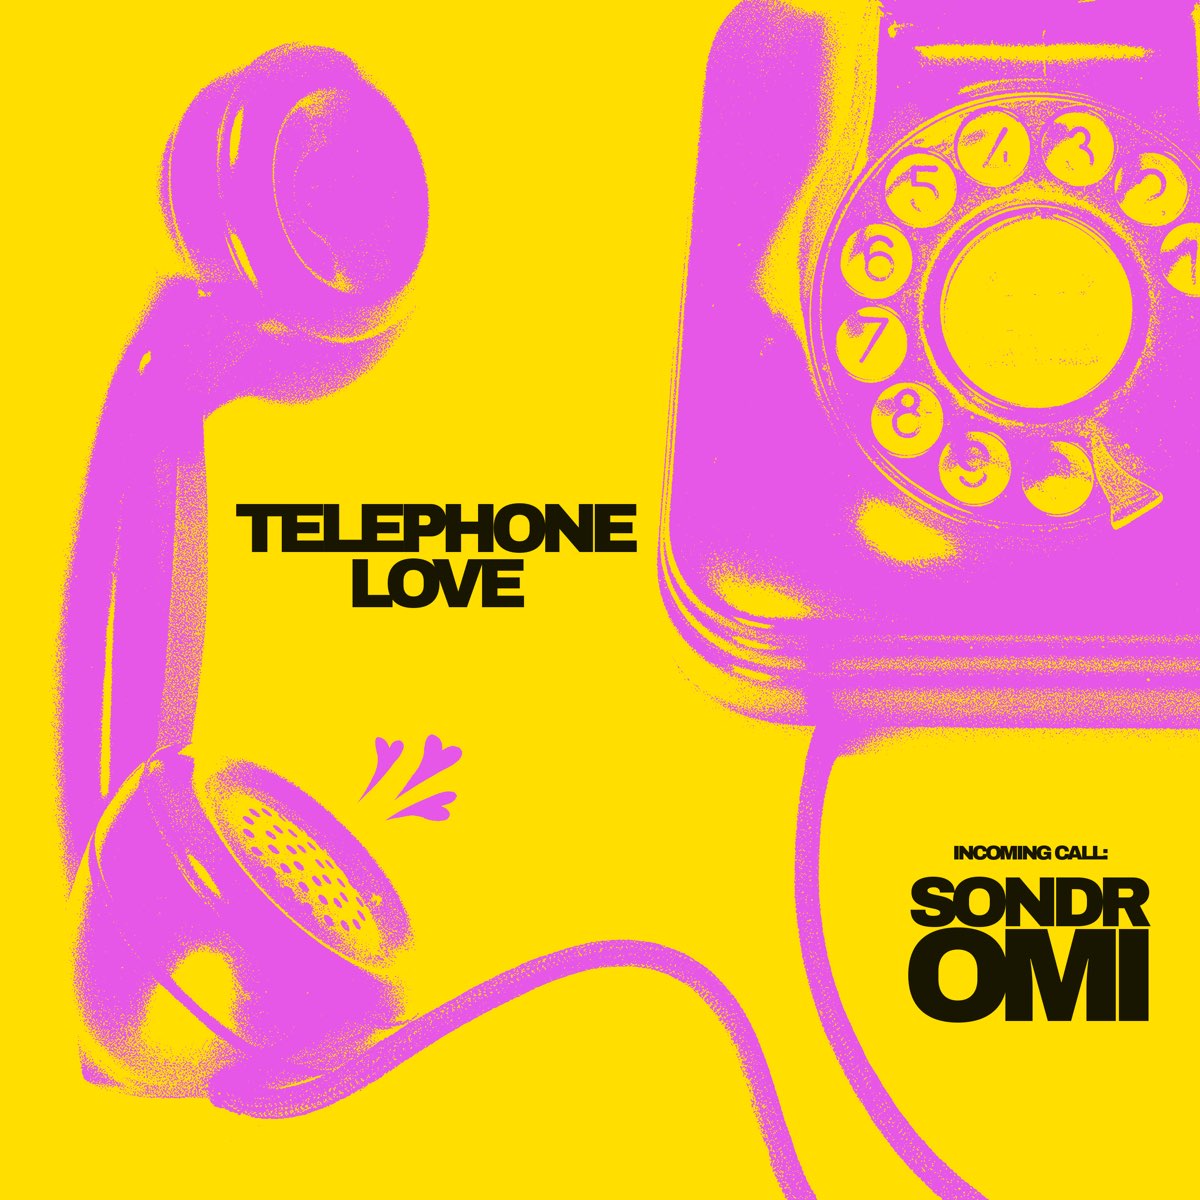 Песня на телефон домашнее. Телефоны Lovely. Телефон Song. Love Phone. Музыка для телефона LP.